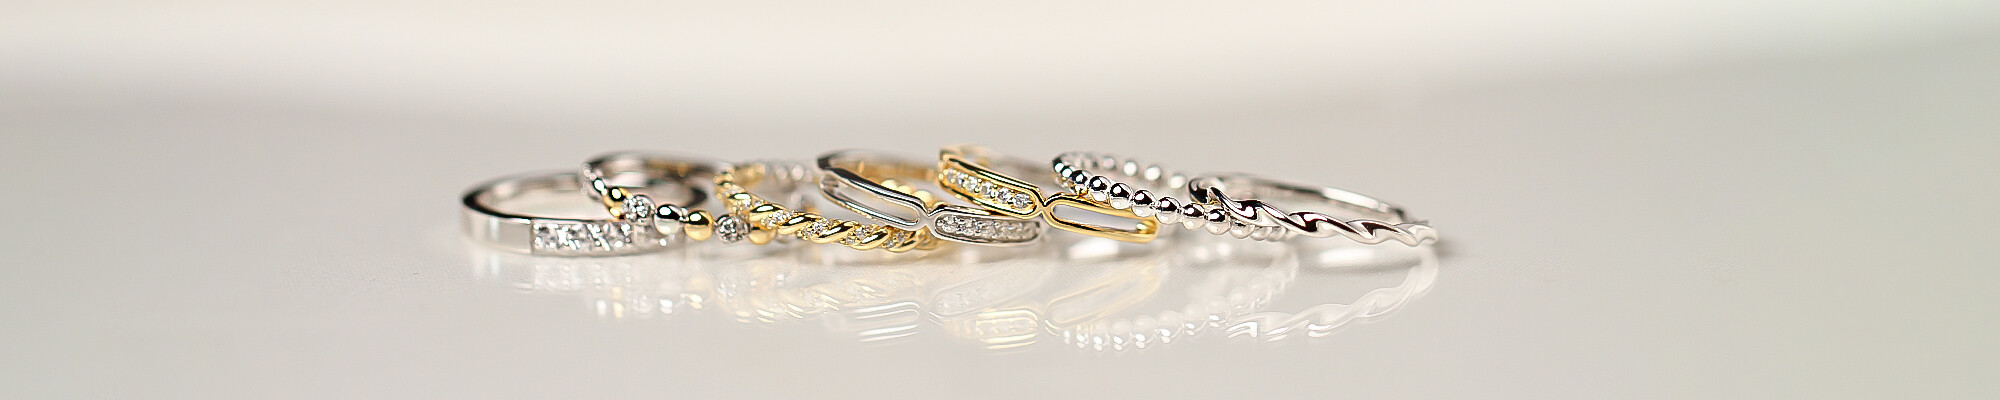 Overvloedig overstroming media Ring kopen? • Dames ringen in zilver en goud • ZINZI